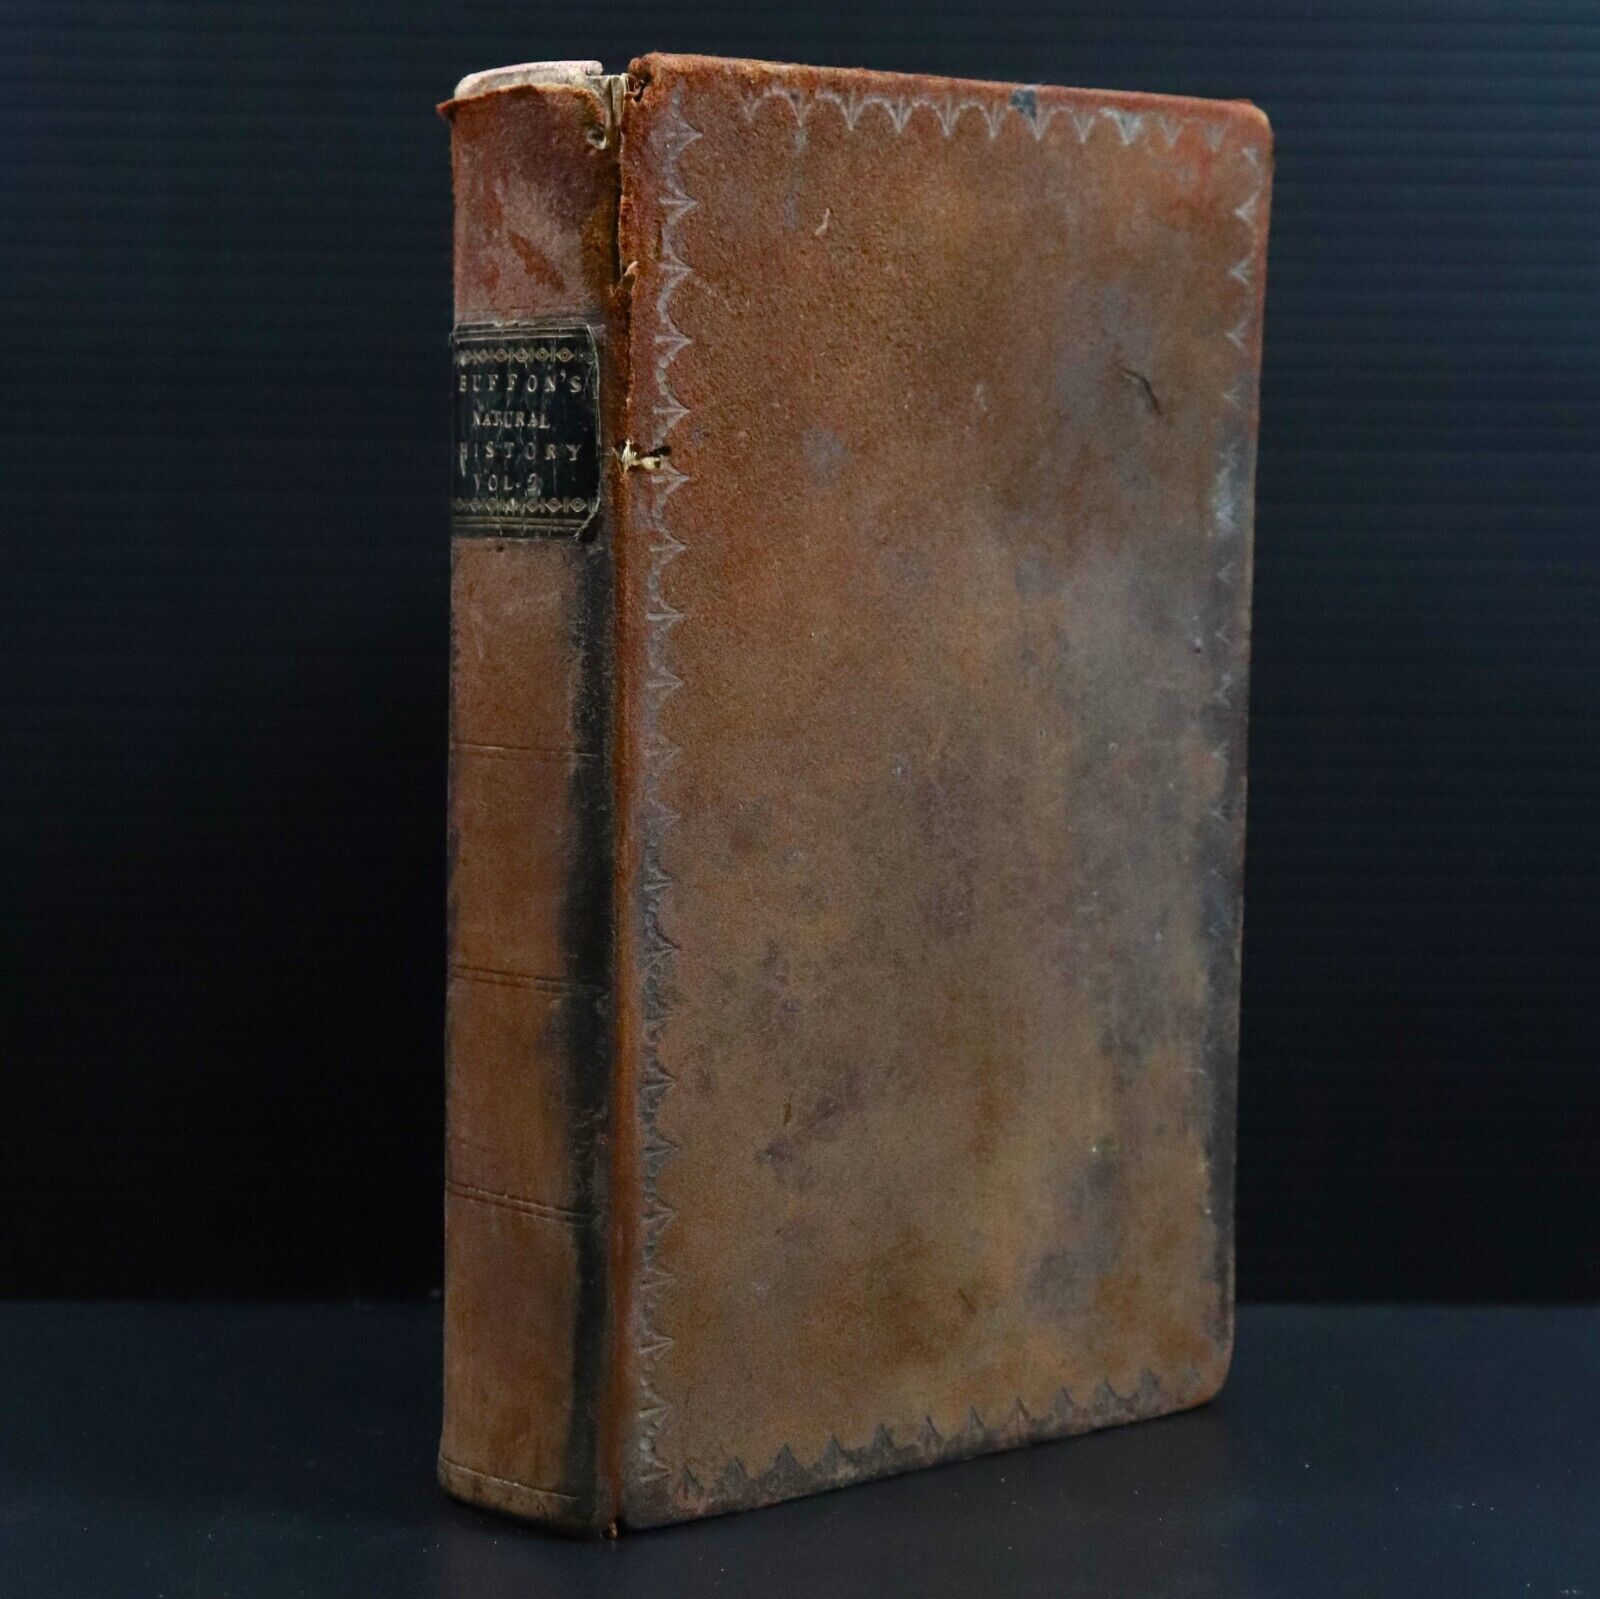 c1810 Buffon's Natural History + British Herbal Antiquarian Natural History Book